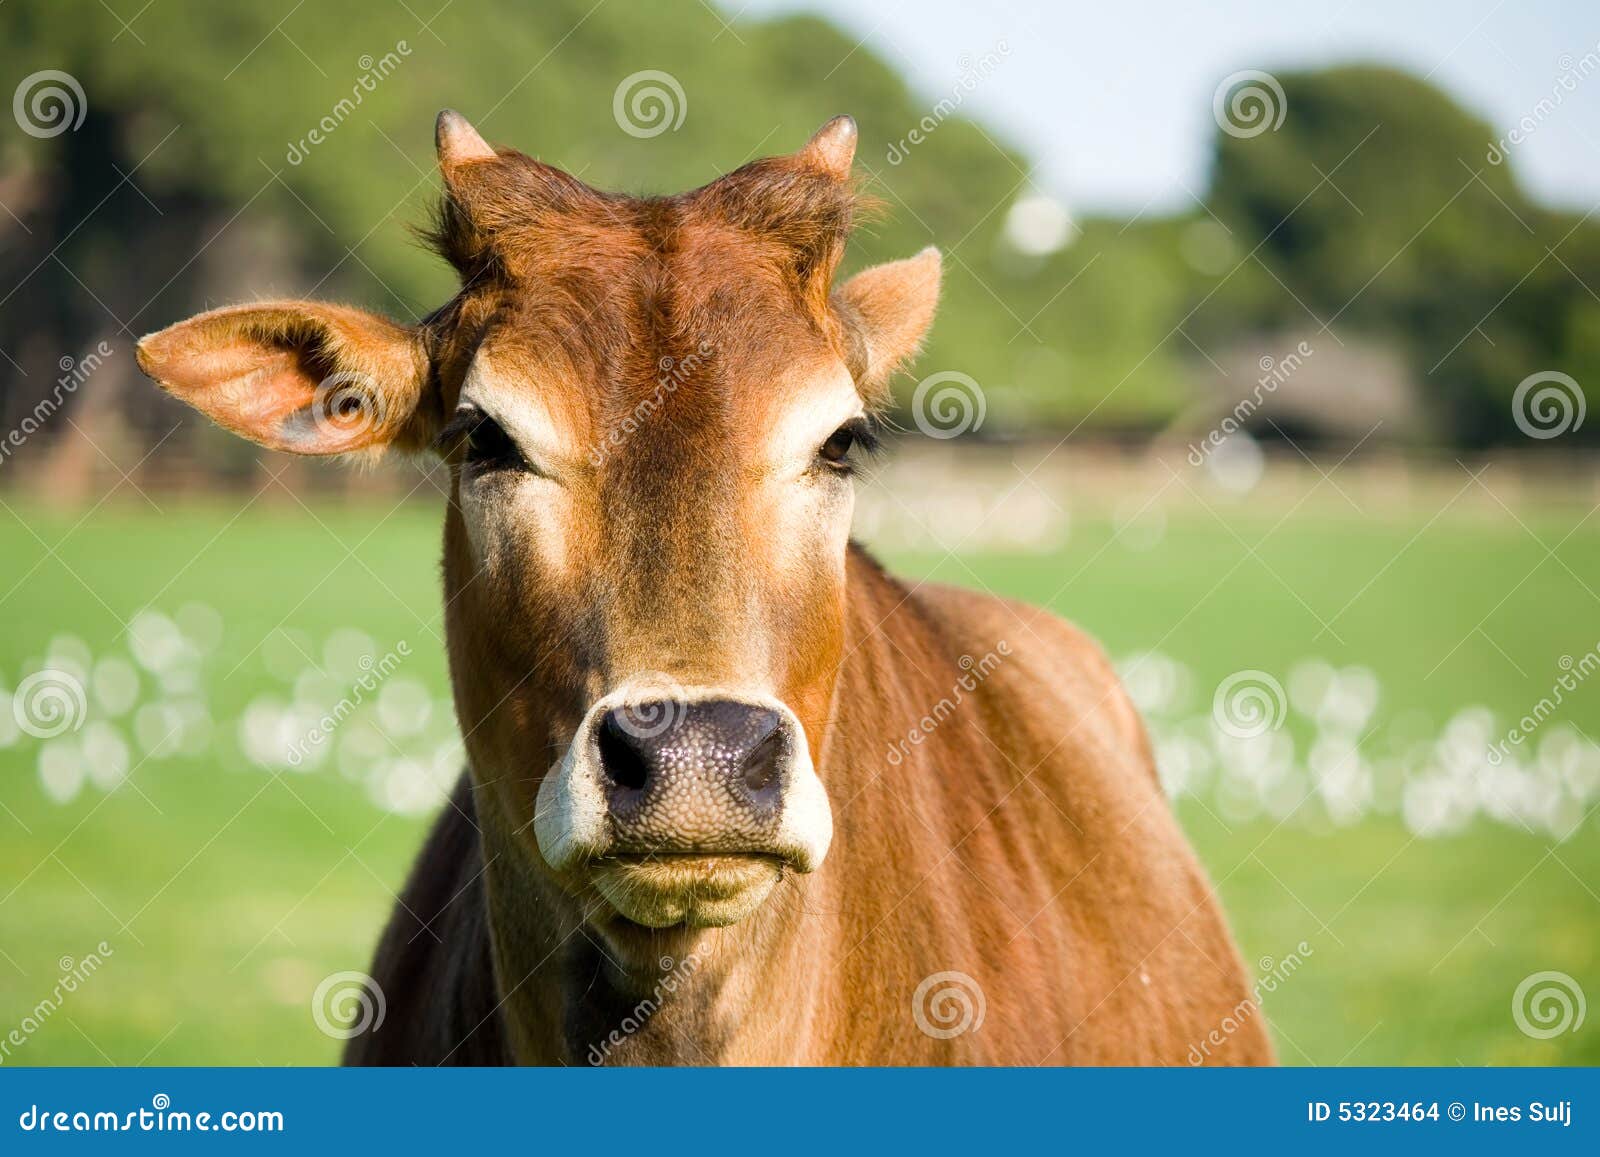 zebu cow portrait